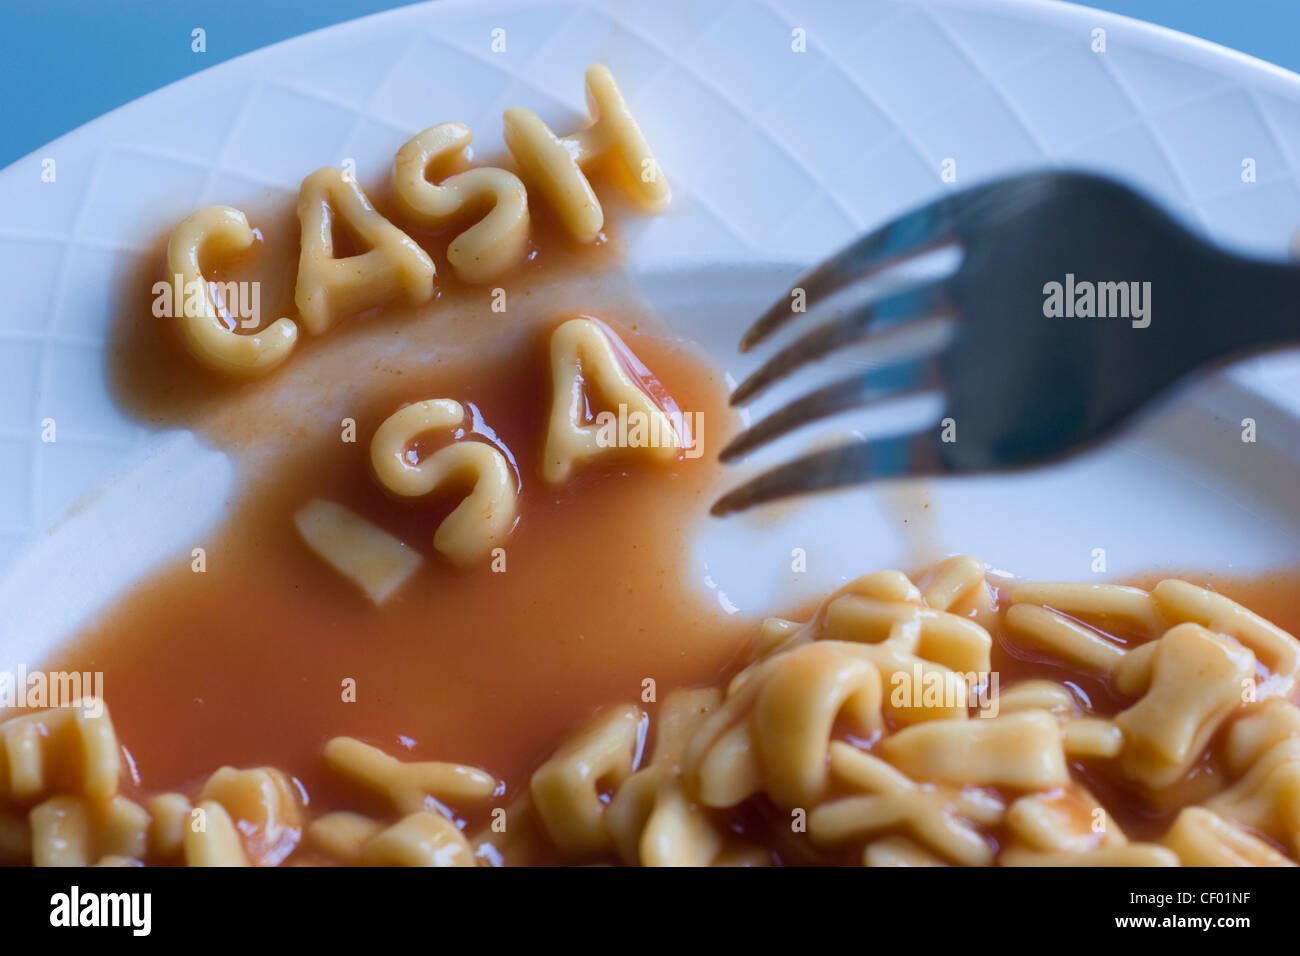 Bargeld Isa Briefe aus Alphabetti Spaghetti Buchstaben individuelle Sparkonten gemacht sind ein Tax-free uk Einsparungen instrument Stockfoto